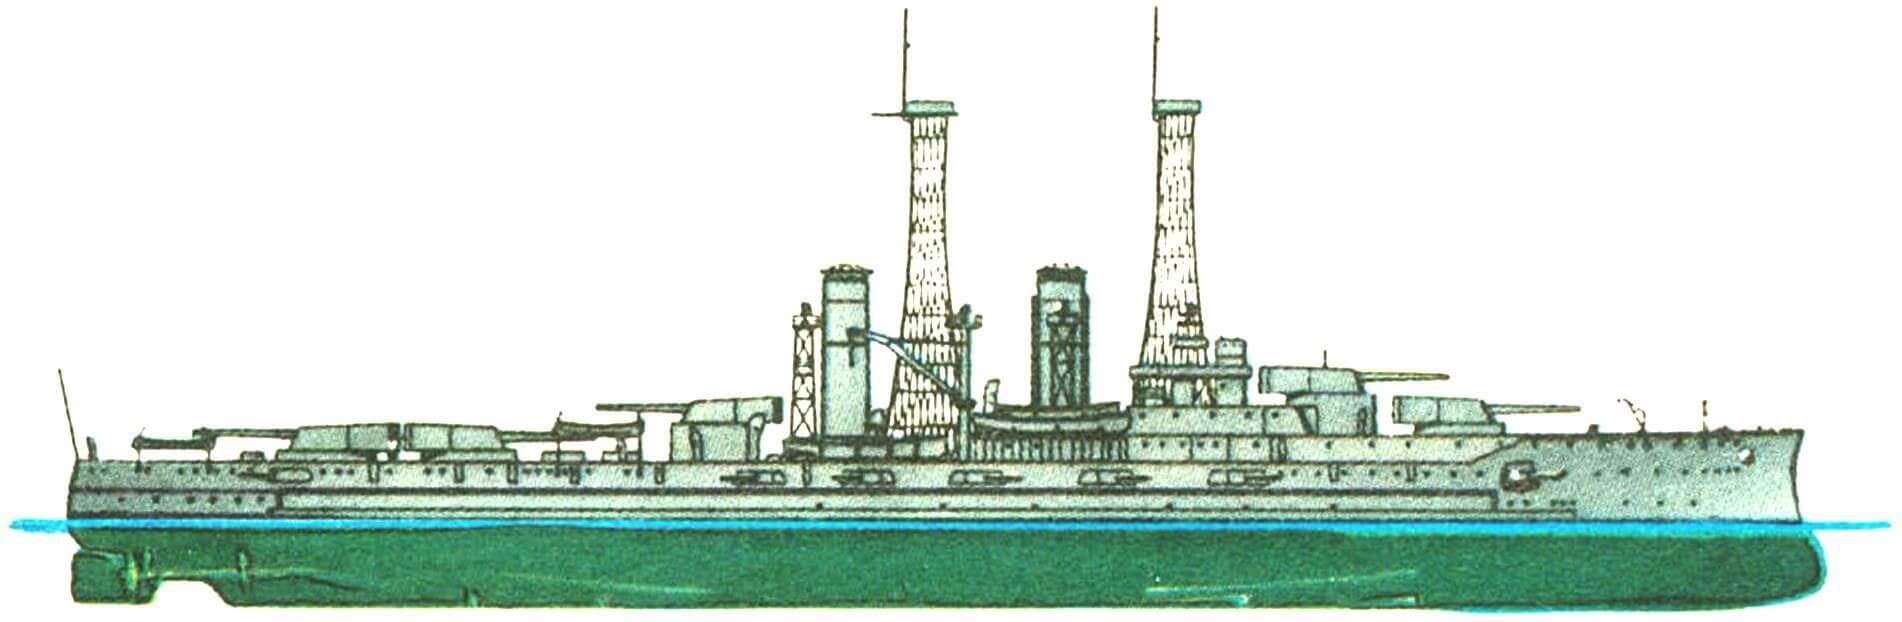 156. Линейный корабль «ДЕЛАВЭР», США, 1910 г.